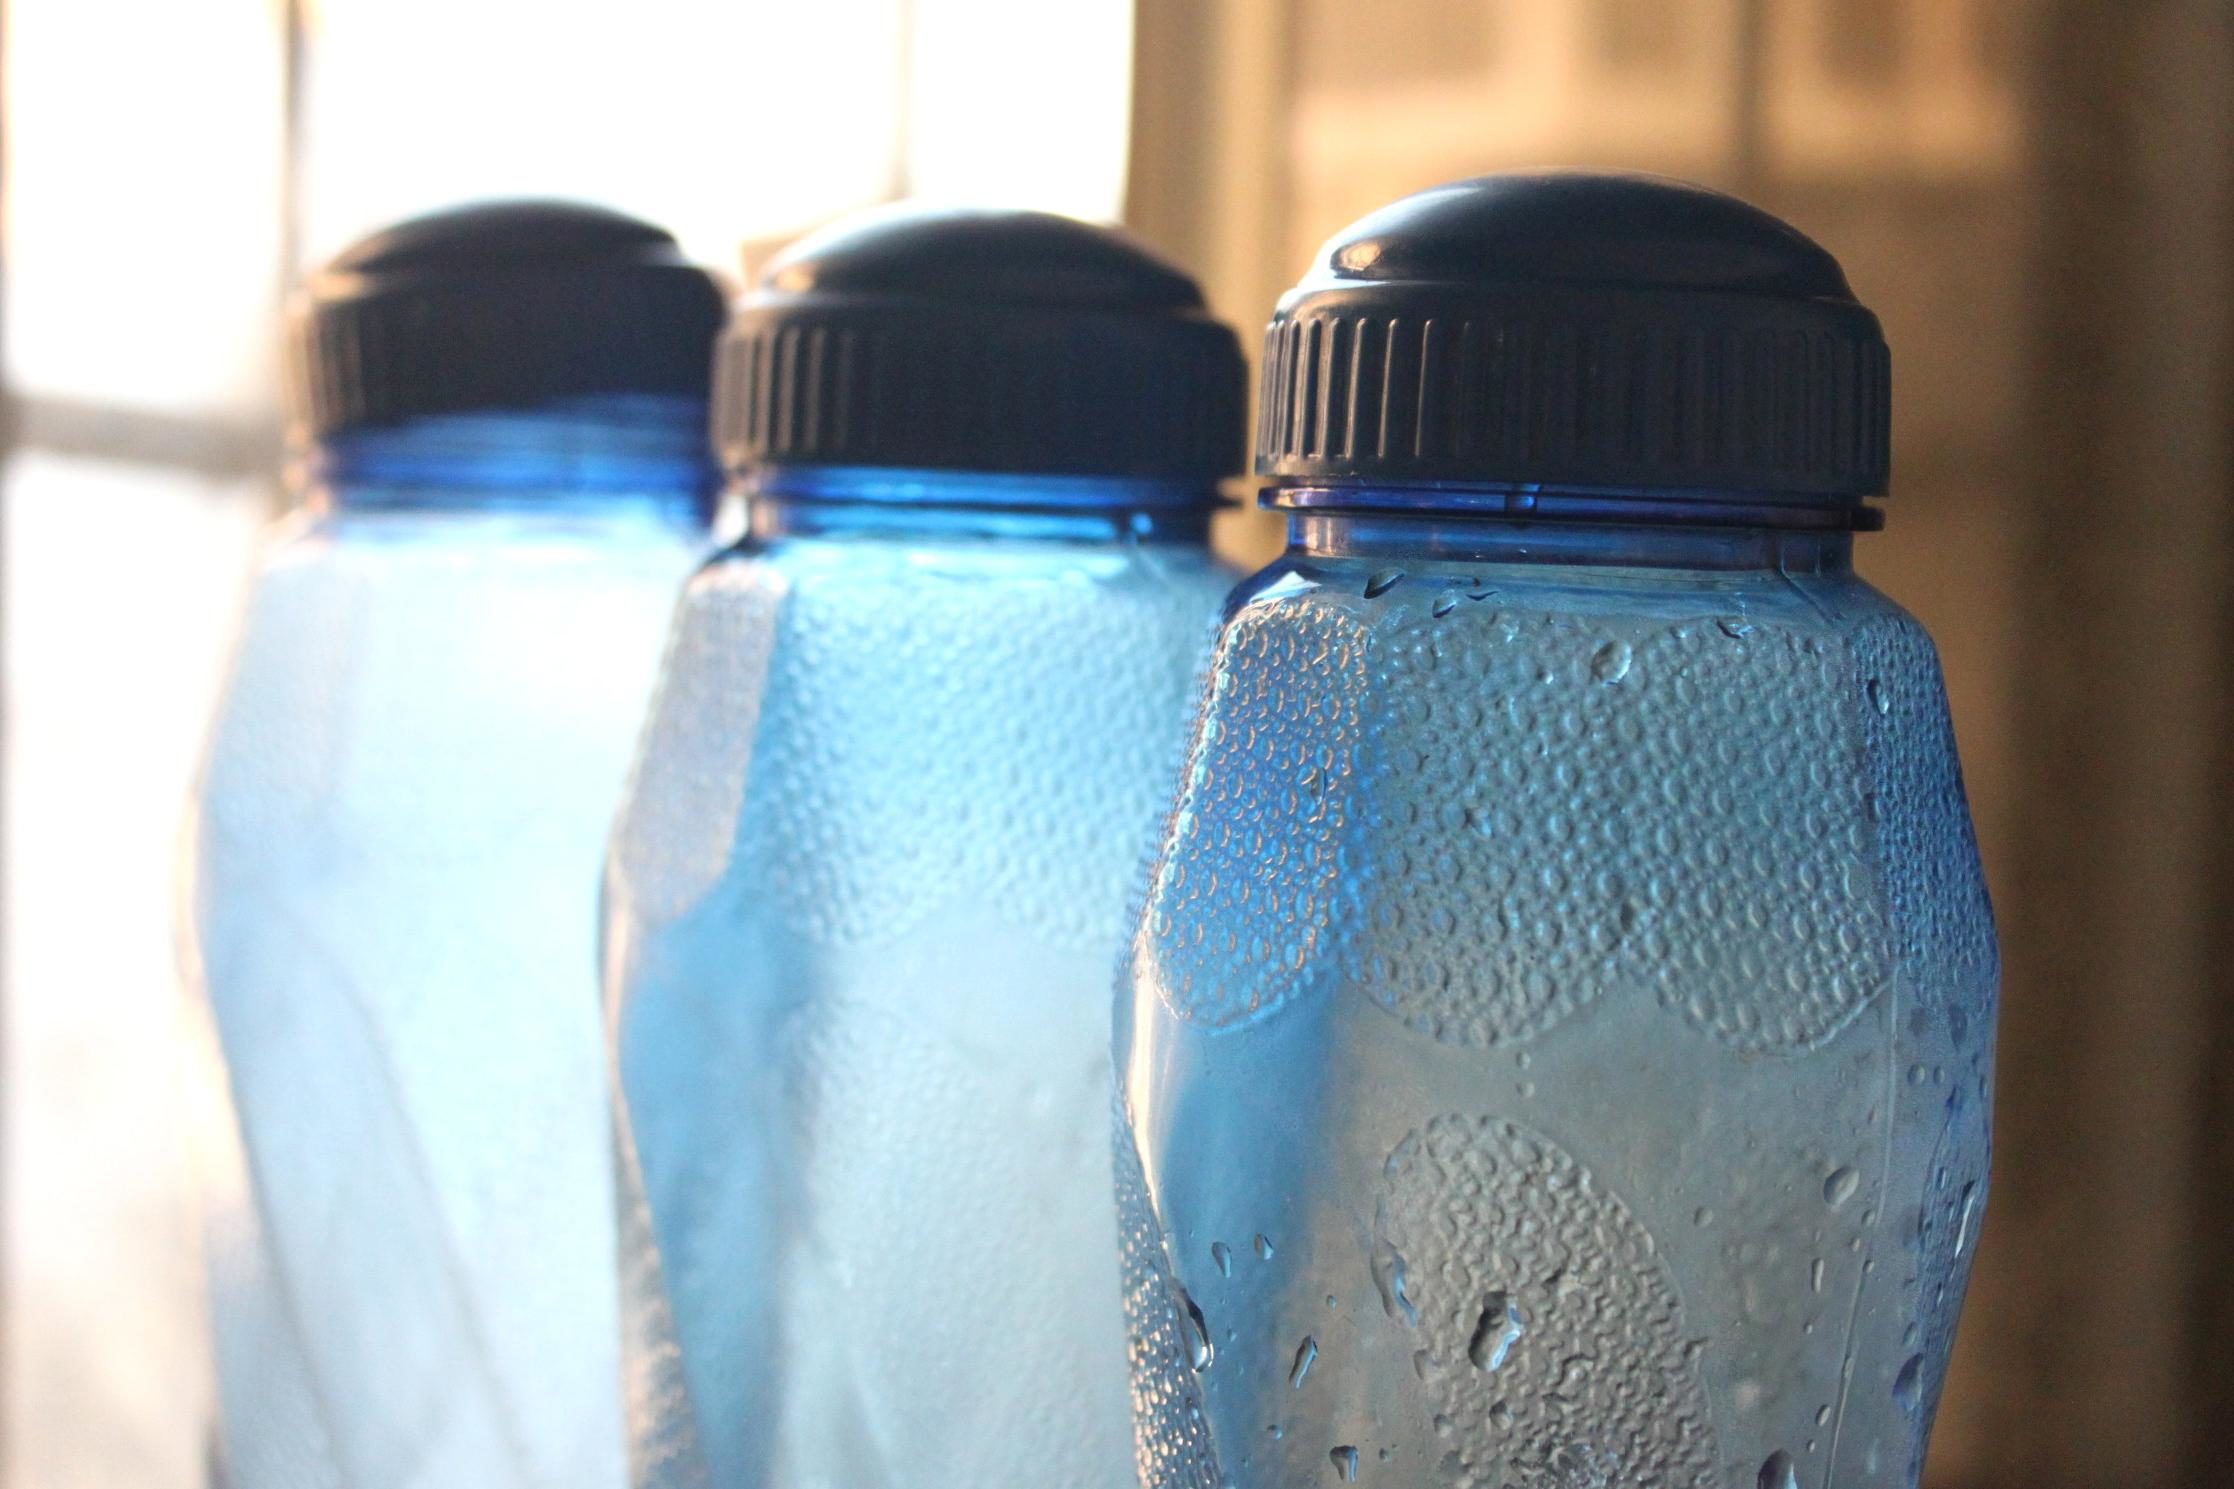 Plástico o vidrio? Utiliza envases sostenibles - Fundación Aquae